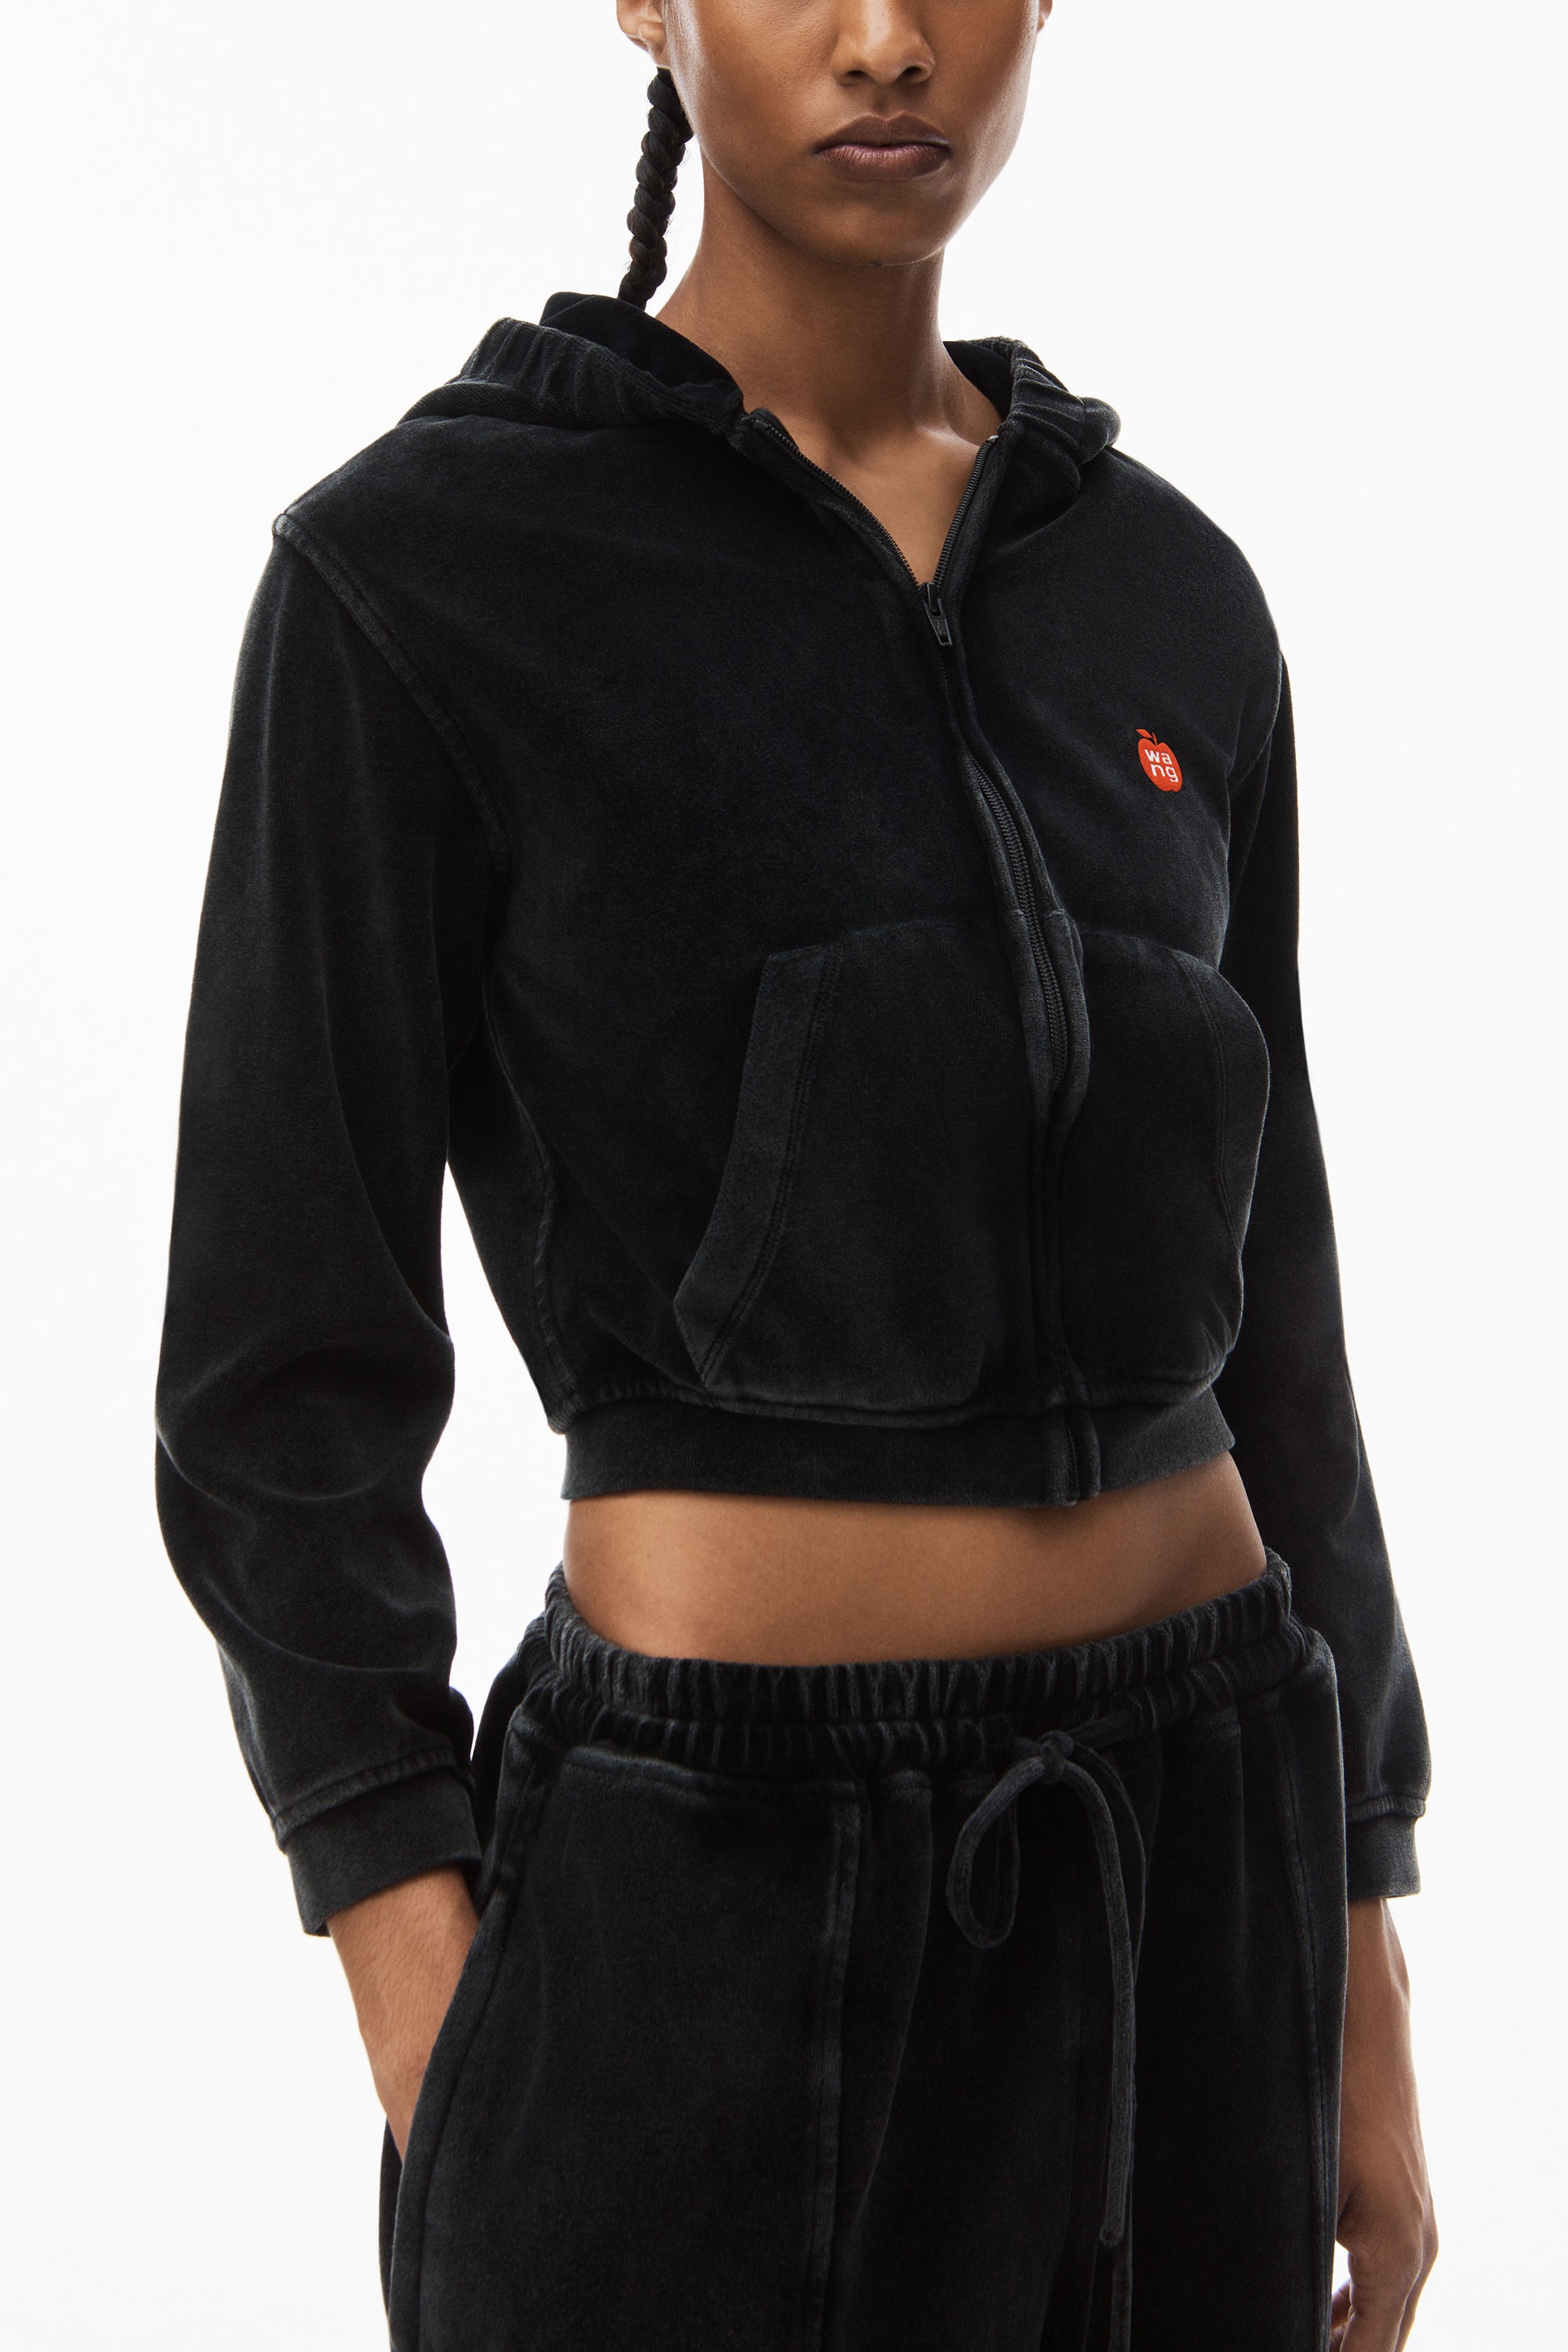 apple logo shrunken zip up hoodie in velour - 3